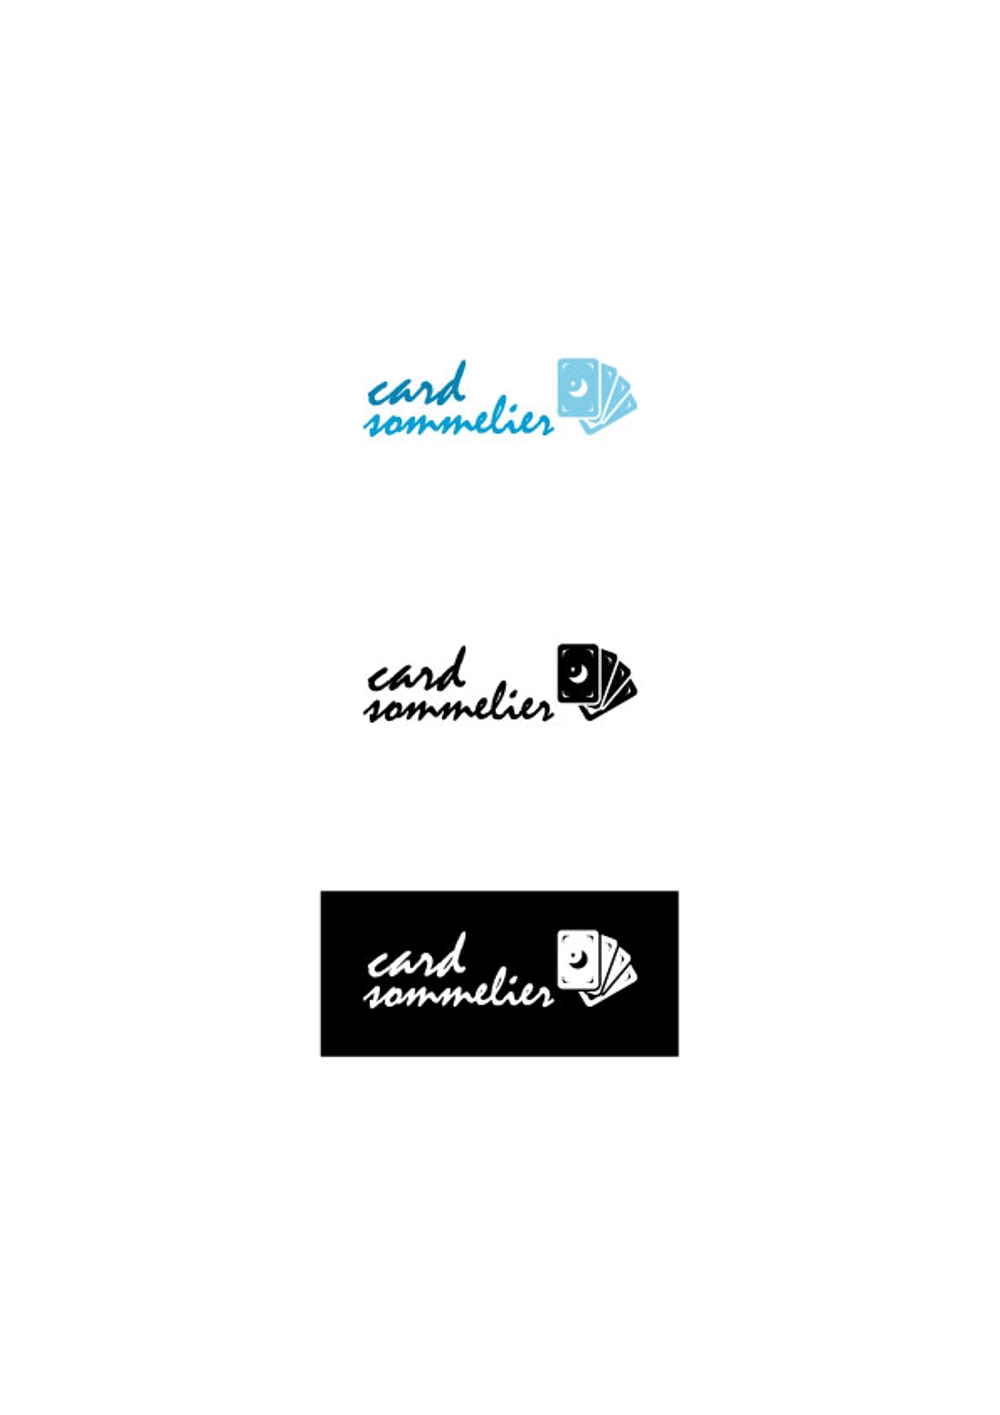 「card_sommeriel」のロゴデザイン